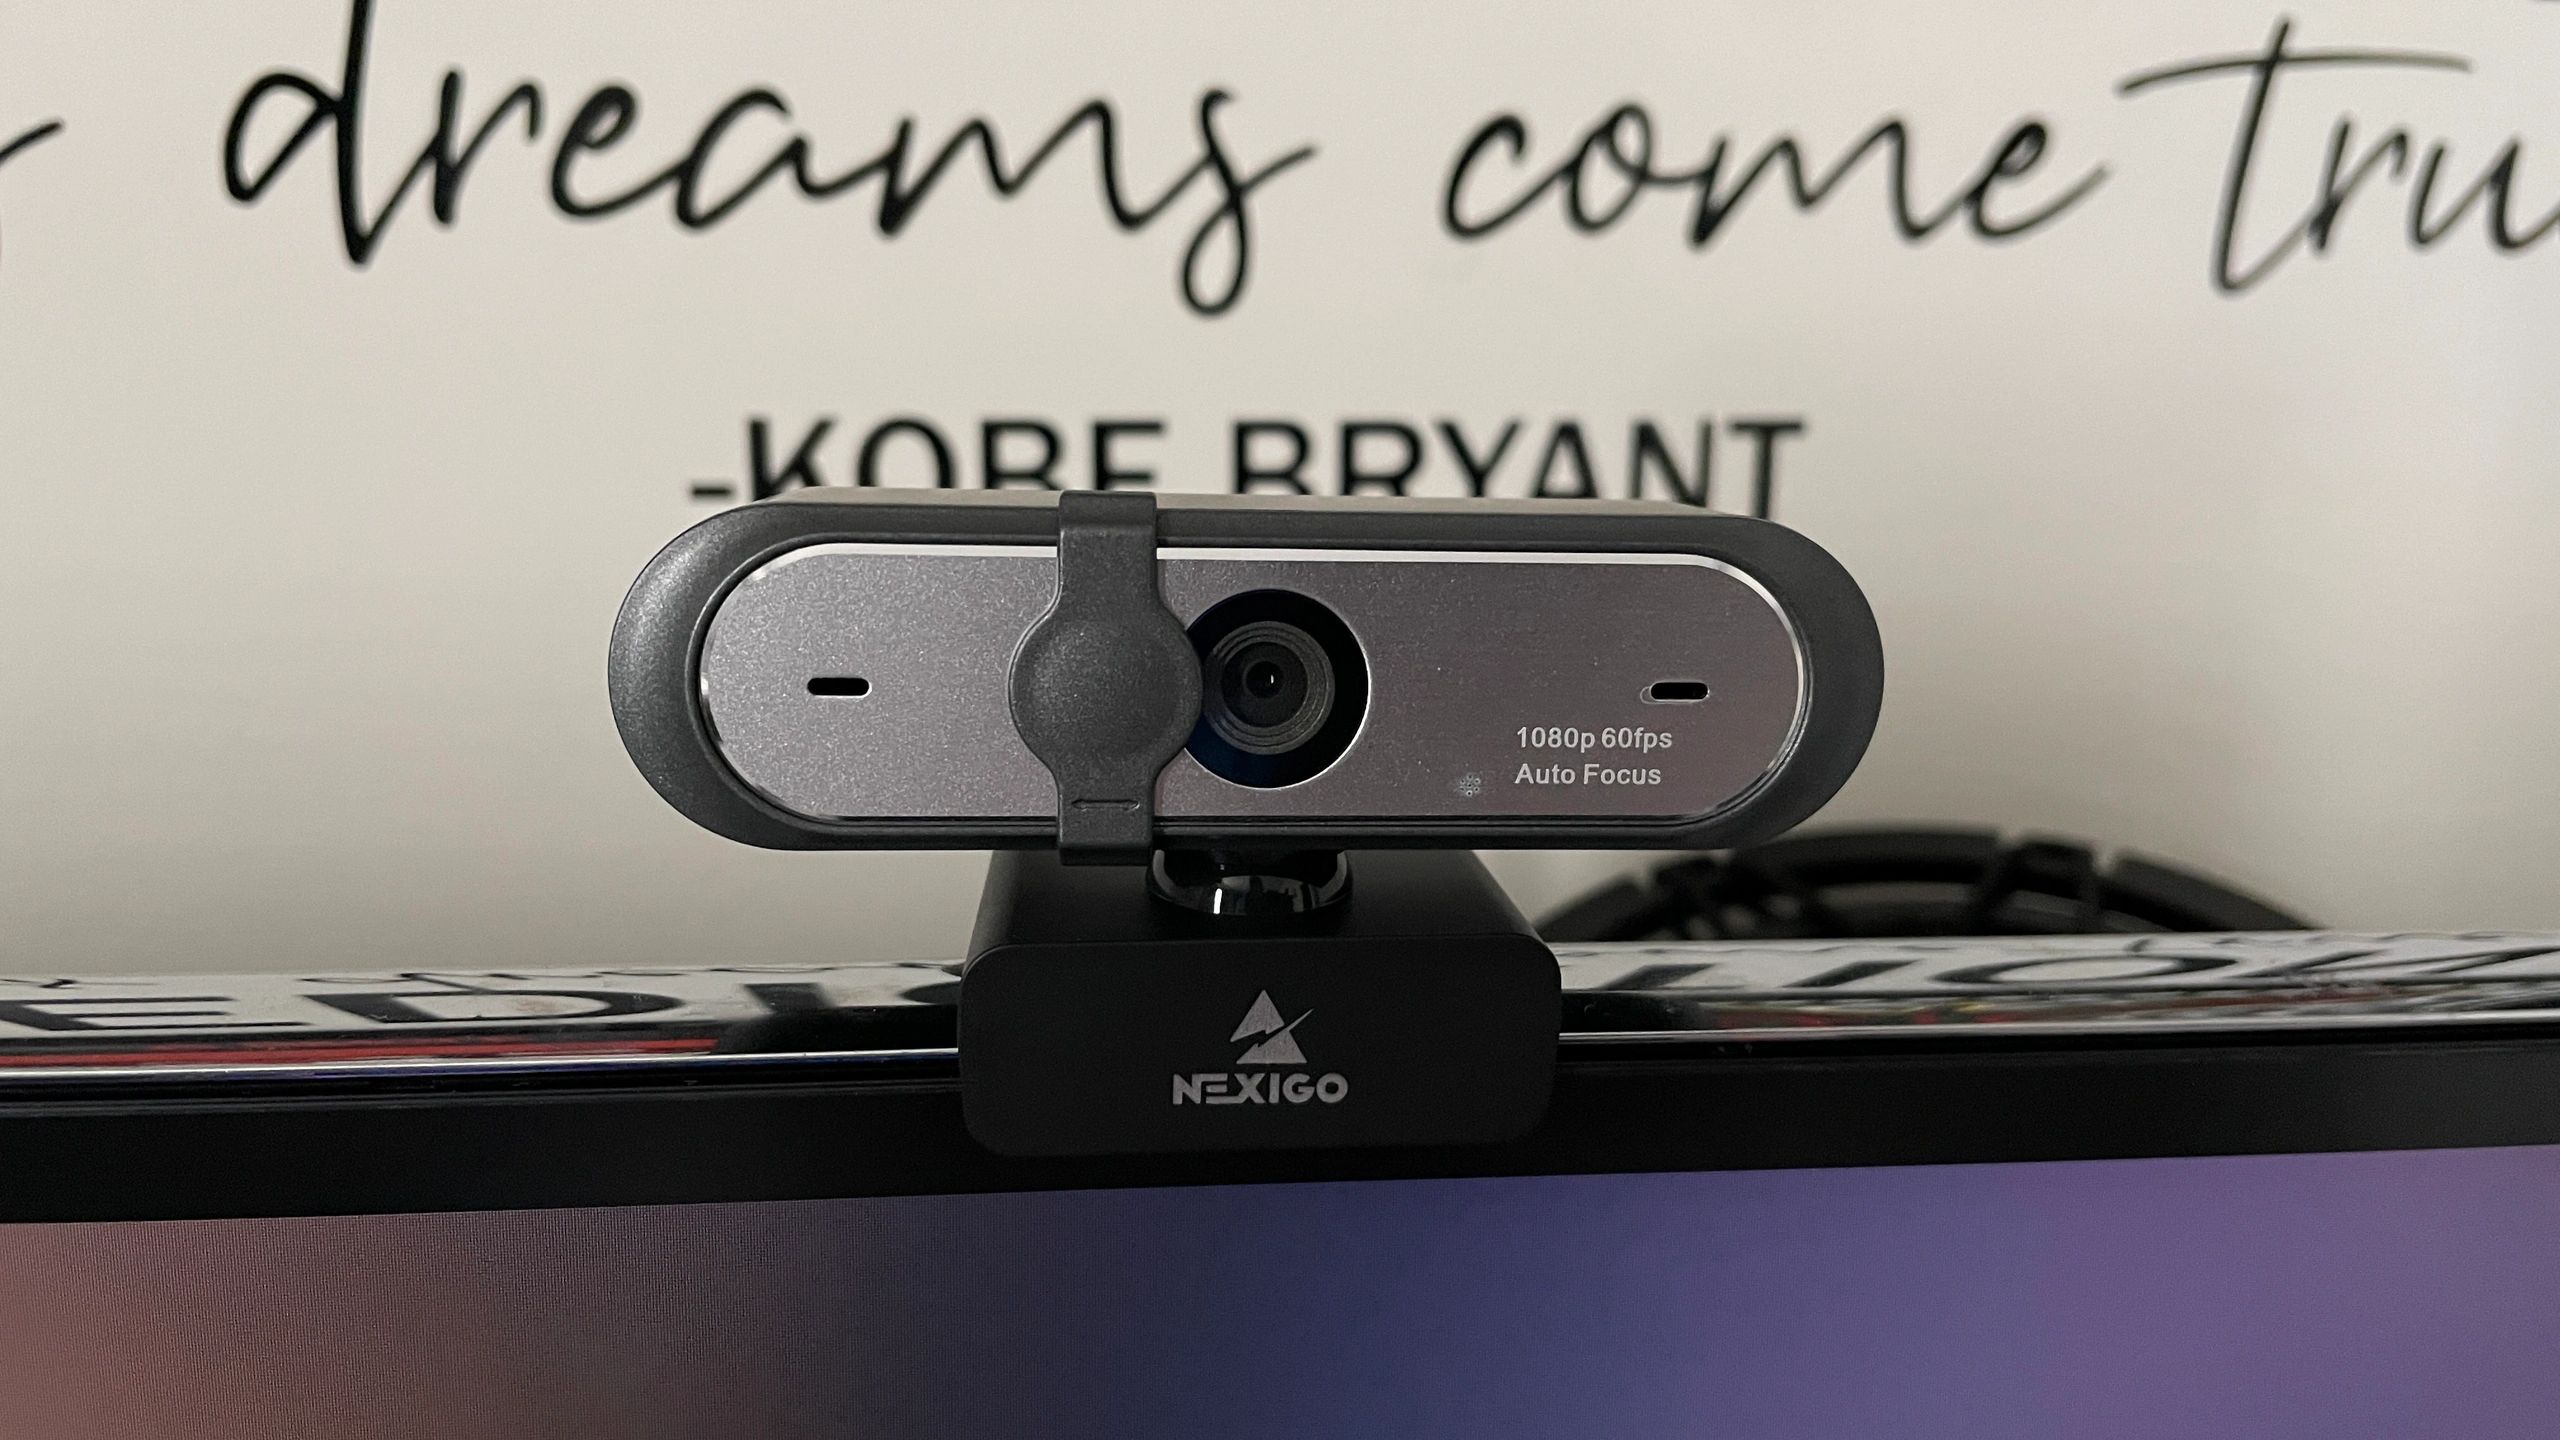 NexiGo N660P. The Best 60 fps Webcam of 2021!